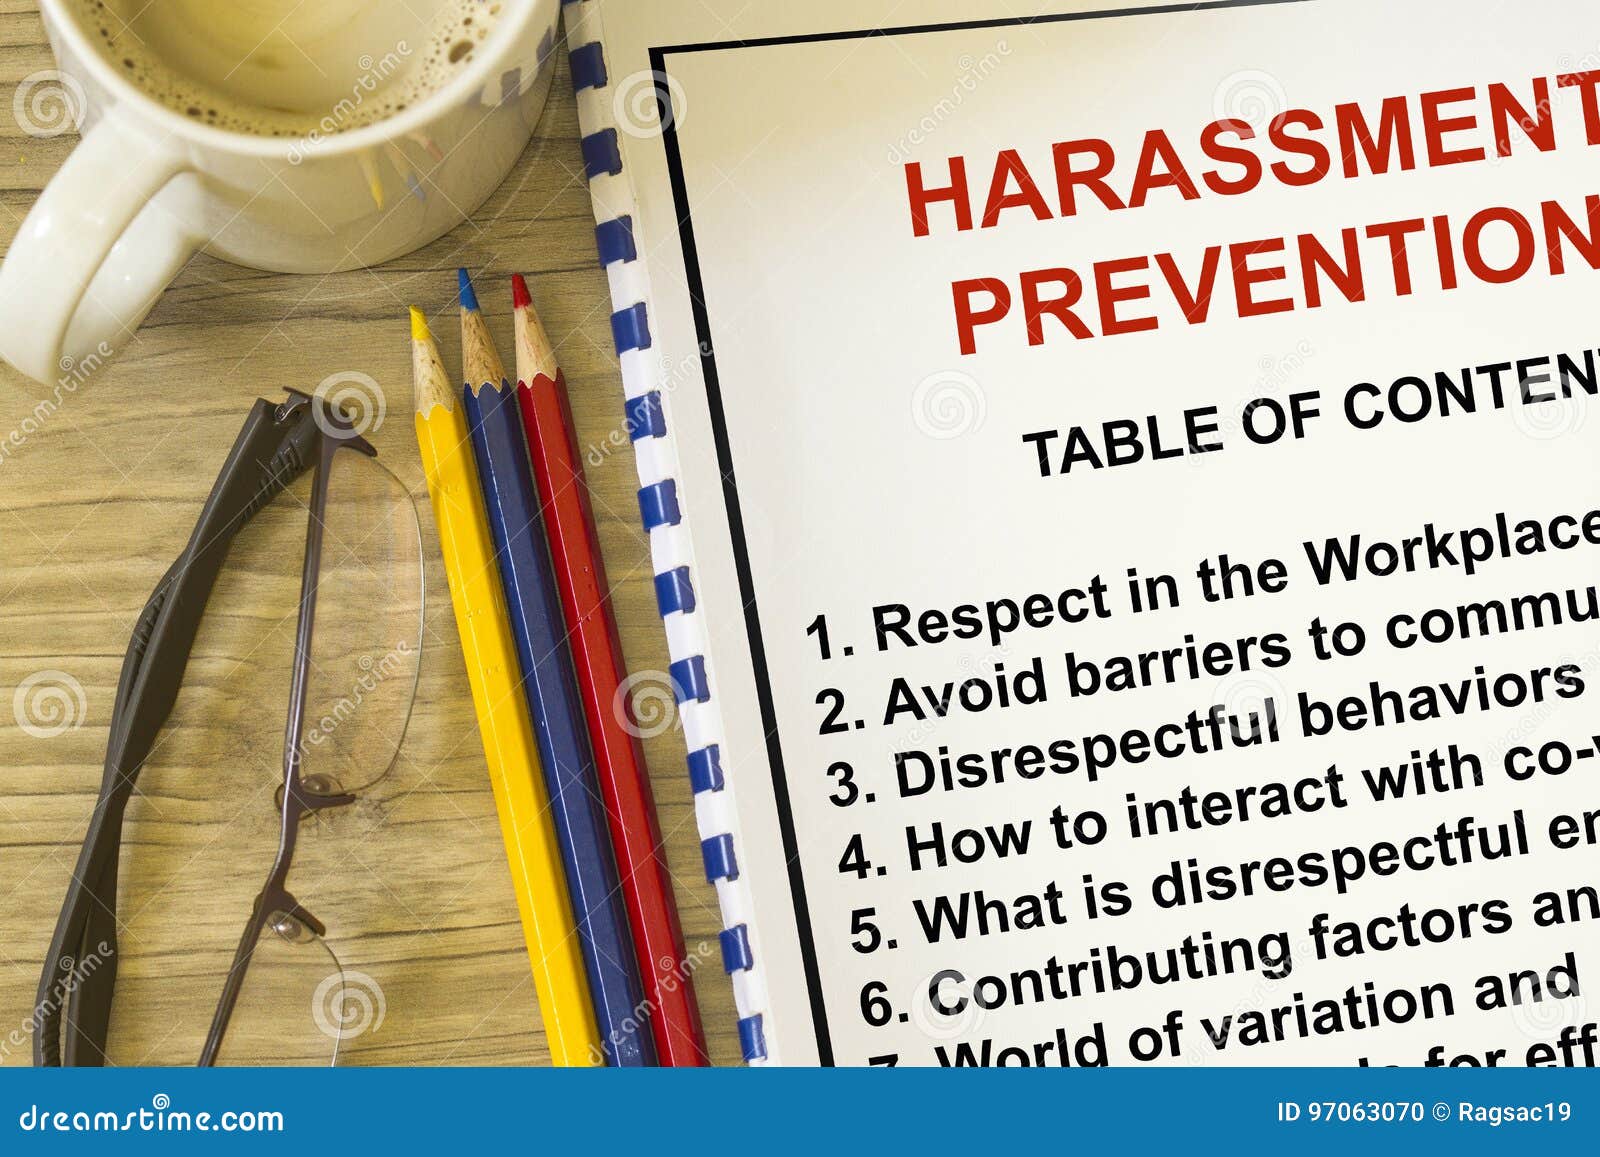 harassment prevention seminar